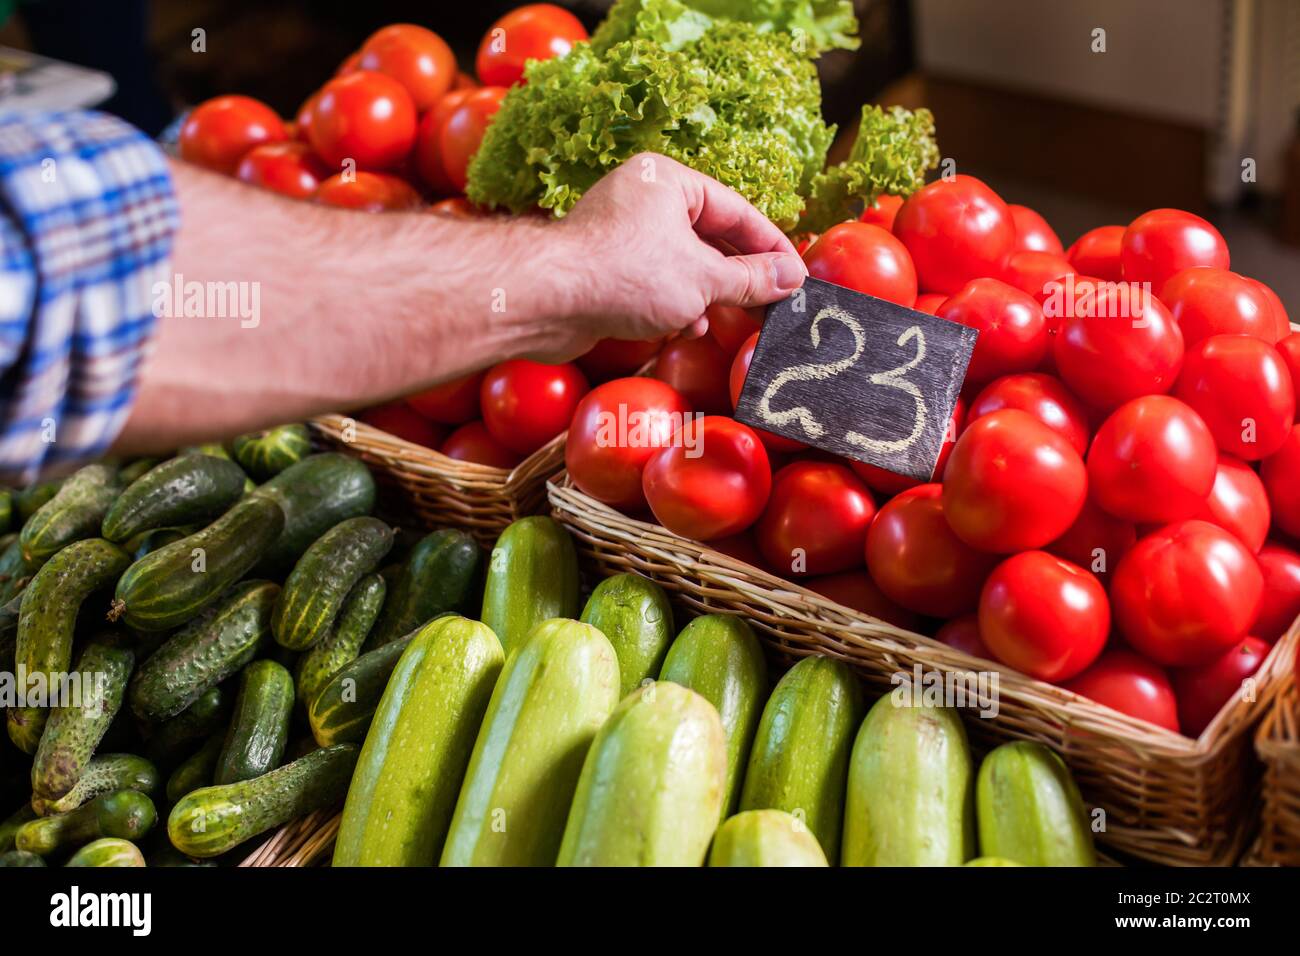 Los vendedores establecen la etiqueta de precio en los tomates rojos almacenados en una cesta de madera. Foto de stock